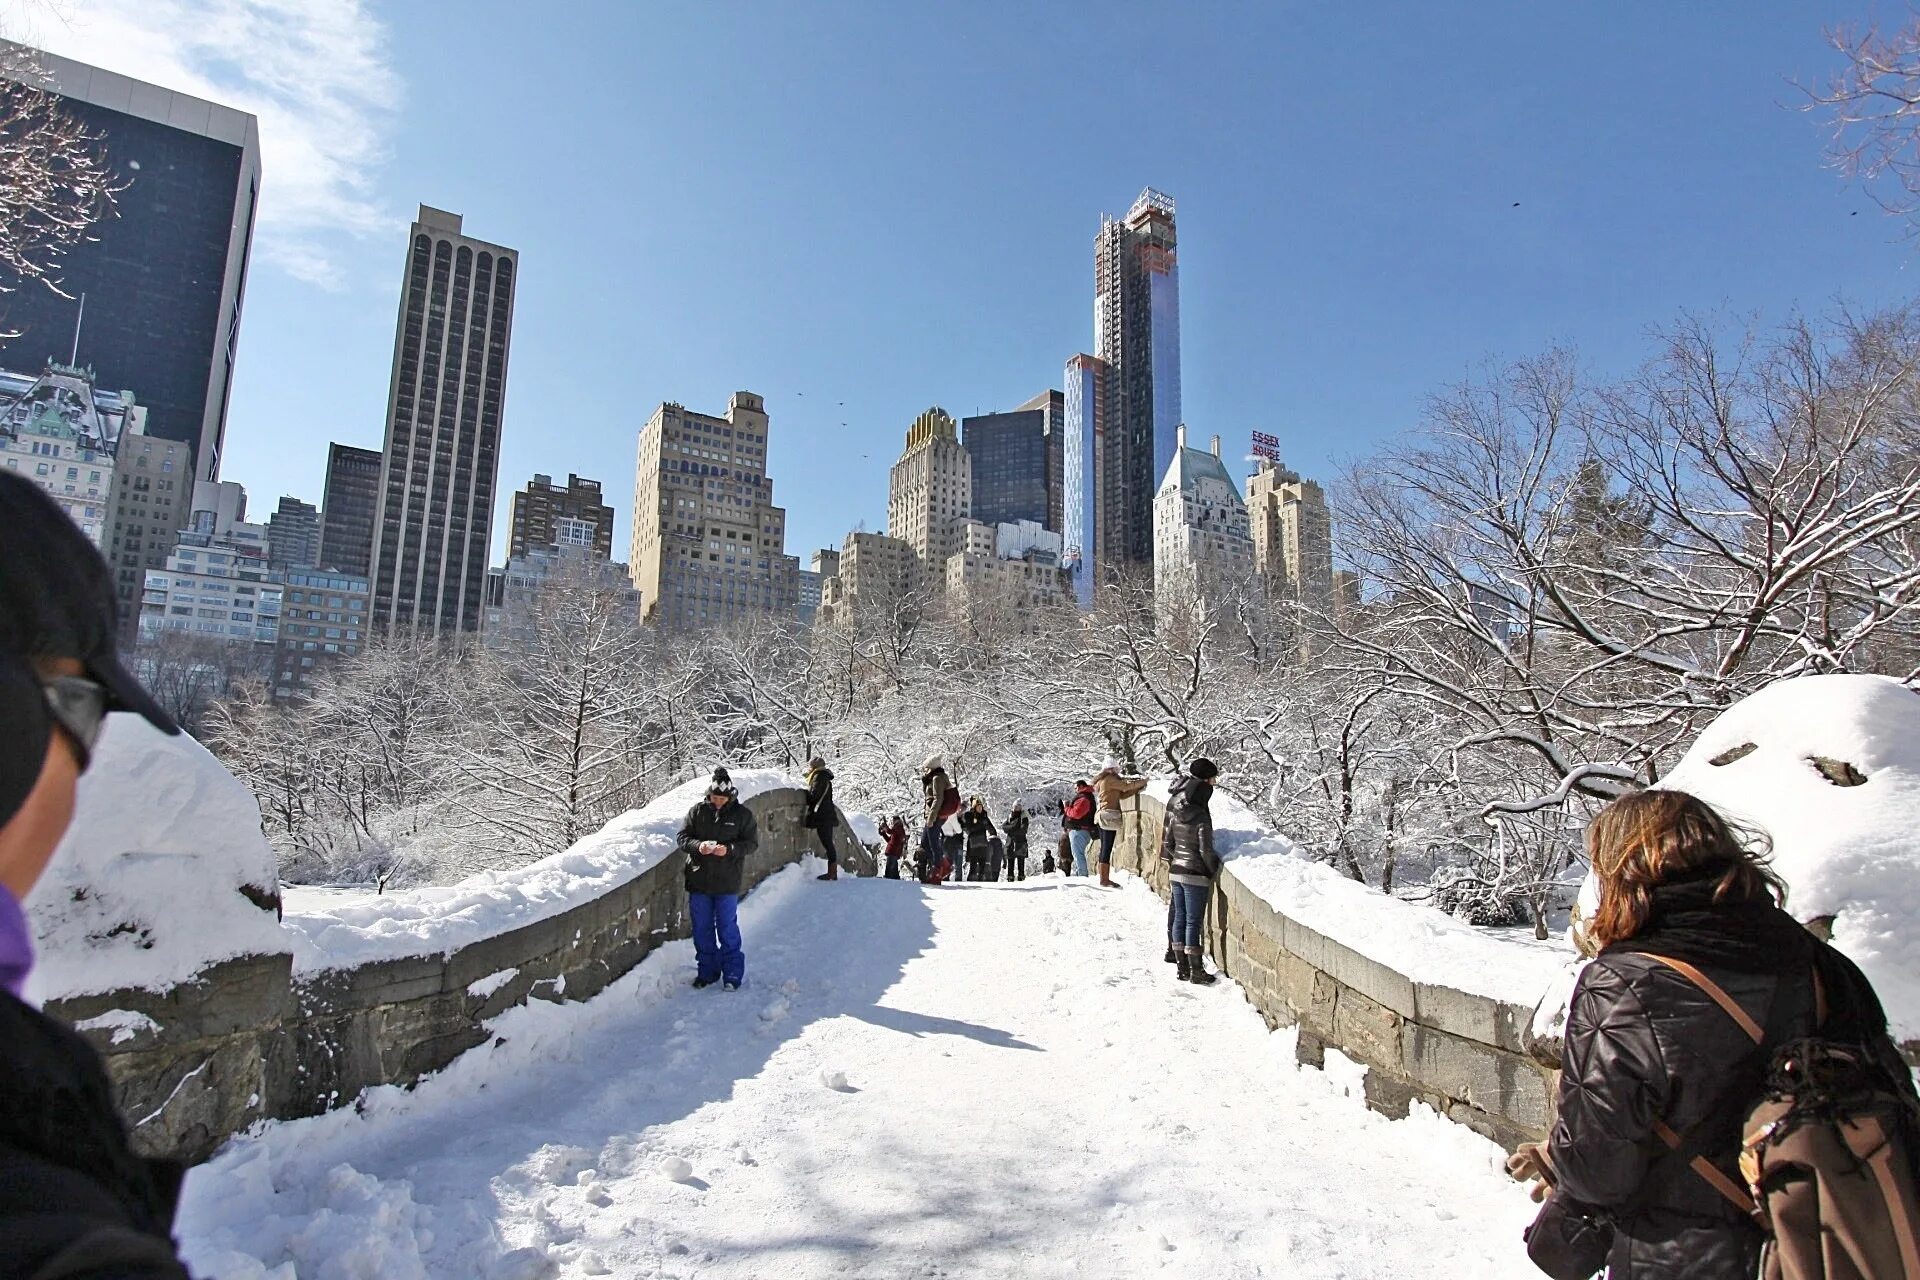 Америка зимнее время. Нью-Йорк Центральный парк зима. Централ парк Нью-Йорк зимой. Нью-Йорк США Центральный парк зимой. Зимний Нью-Йорк 5 Авеню.